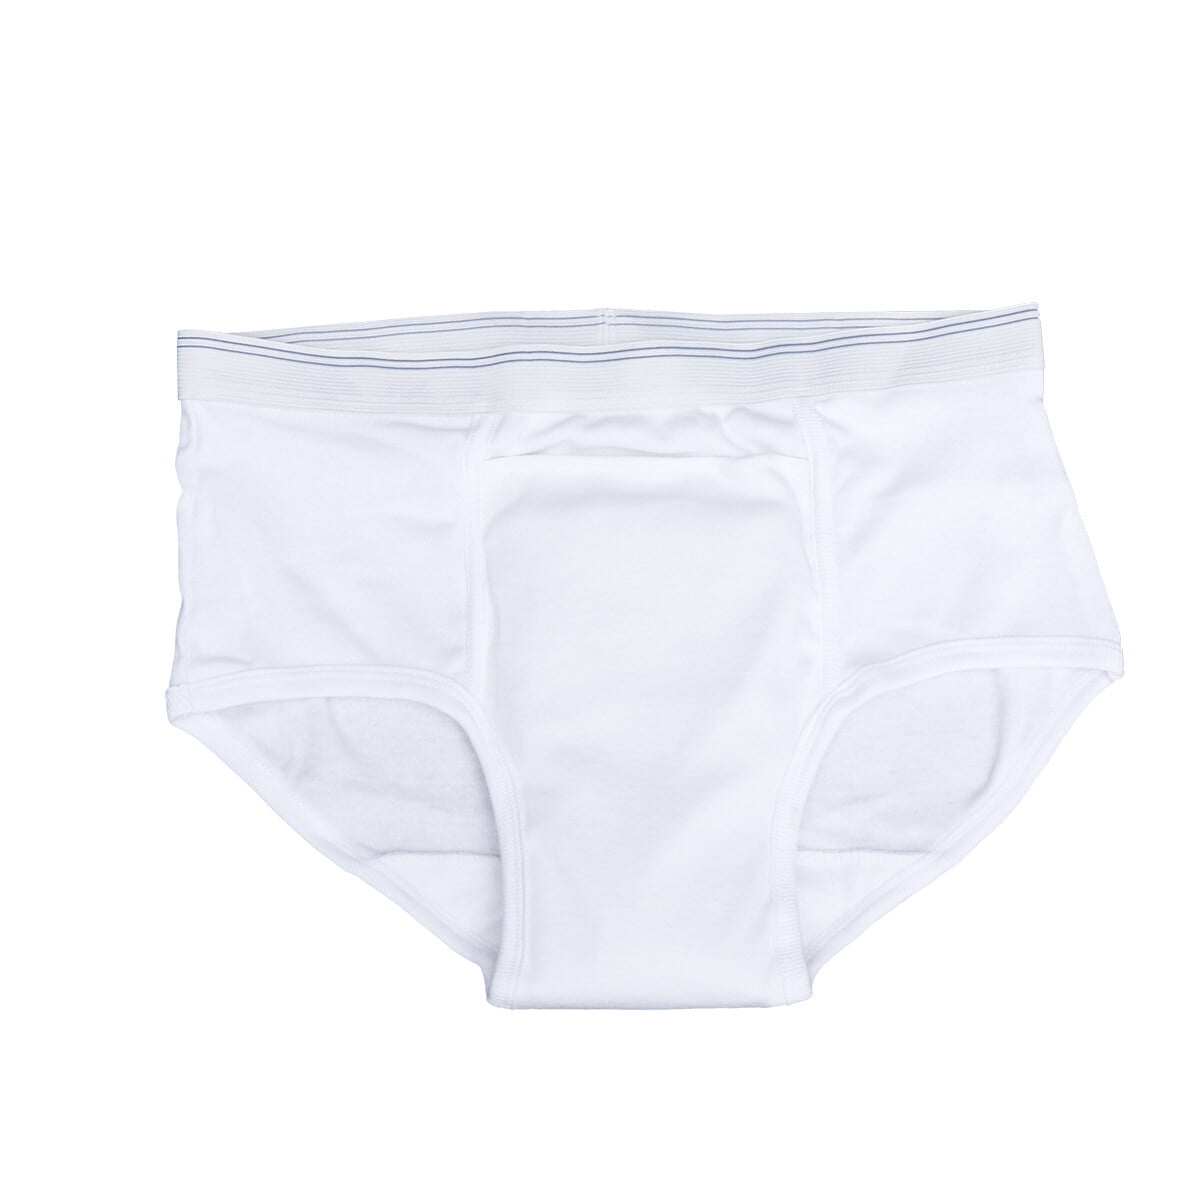 5PCS Mens 100% Cotton Incontinence Briefs Underwear Disposable